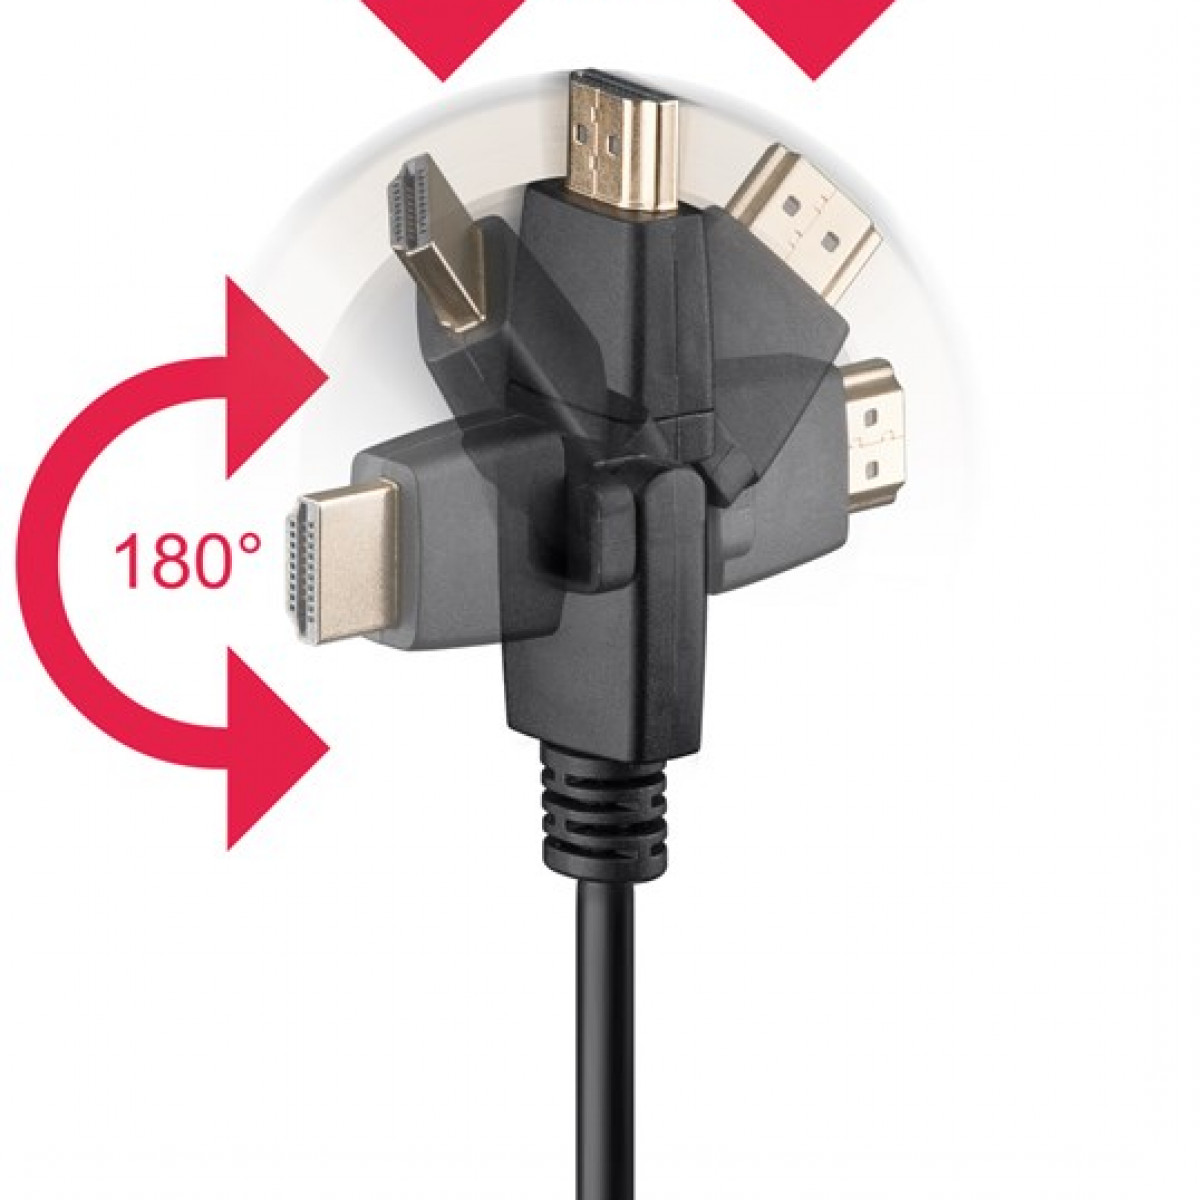 GOOBAY High-Speed-HDMI™-360°-Kabel mit Ethernet Kabel HDMI